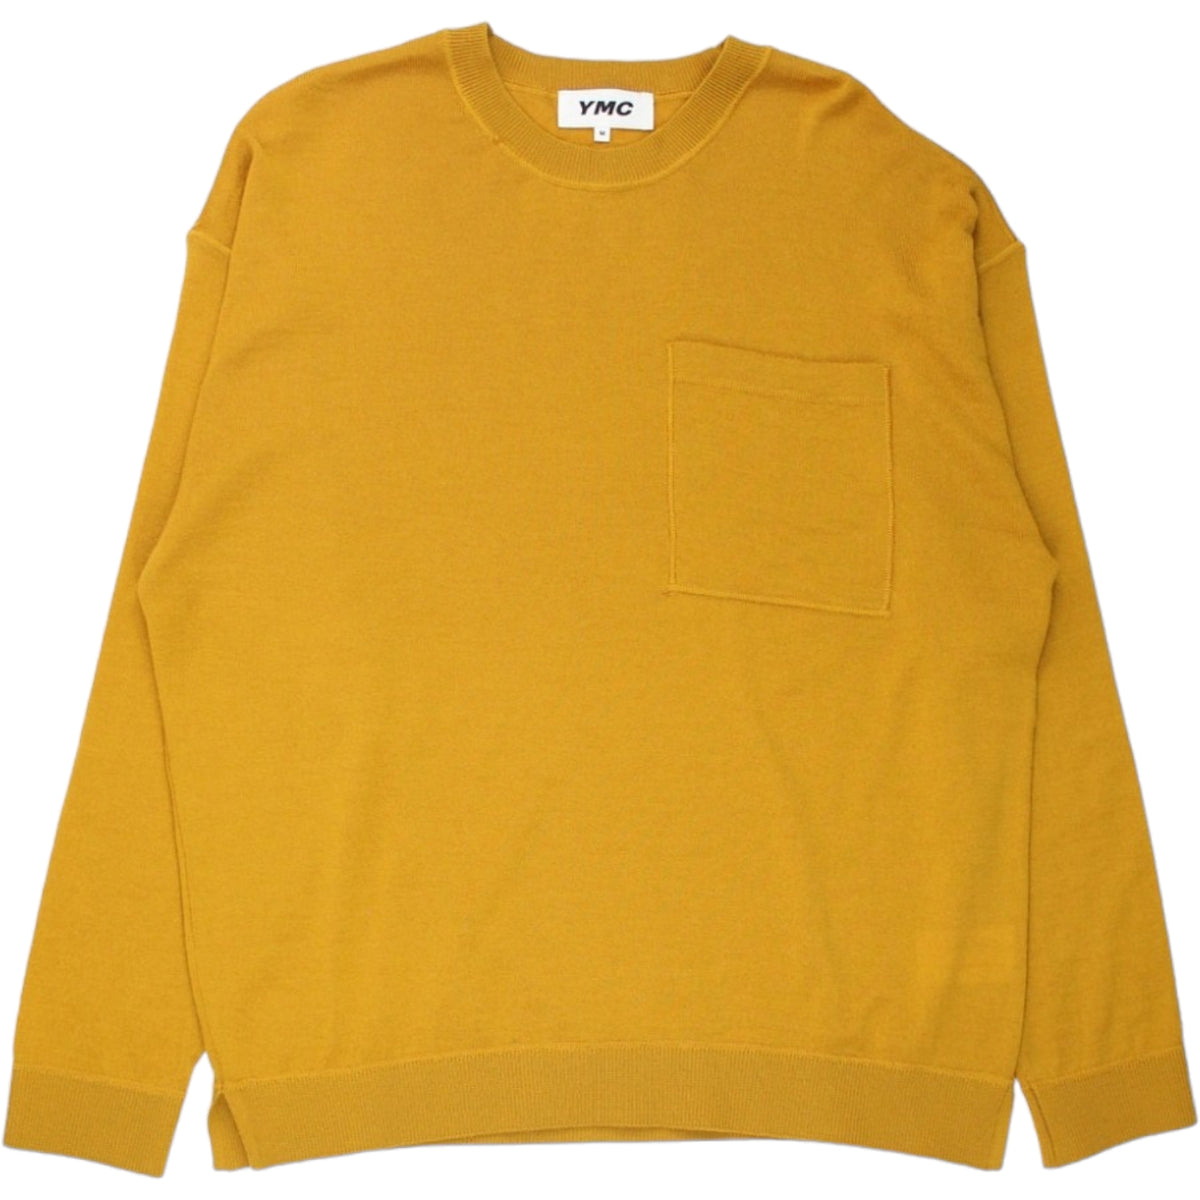 YMC Saffron Sweatshirt Style Jumper